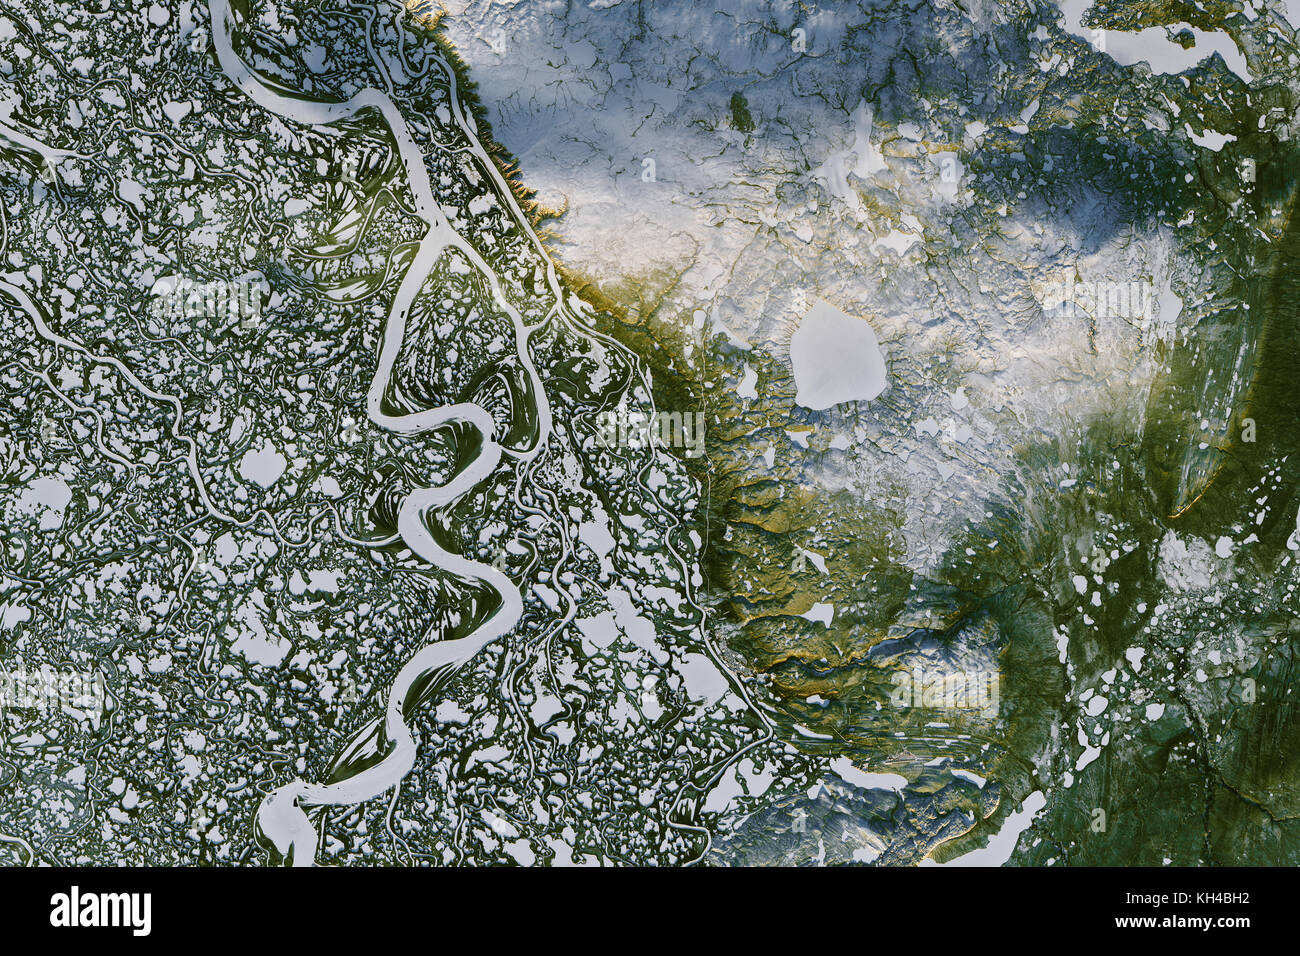 Die Mackenzie River, W. Kanada, Nov. 7, 2016, Landsat 8 von der NASA Earth Observatory Bilder von Joshua Stevens, Landsat-Daten von der USGS Stockfoto